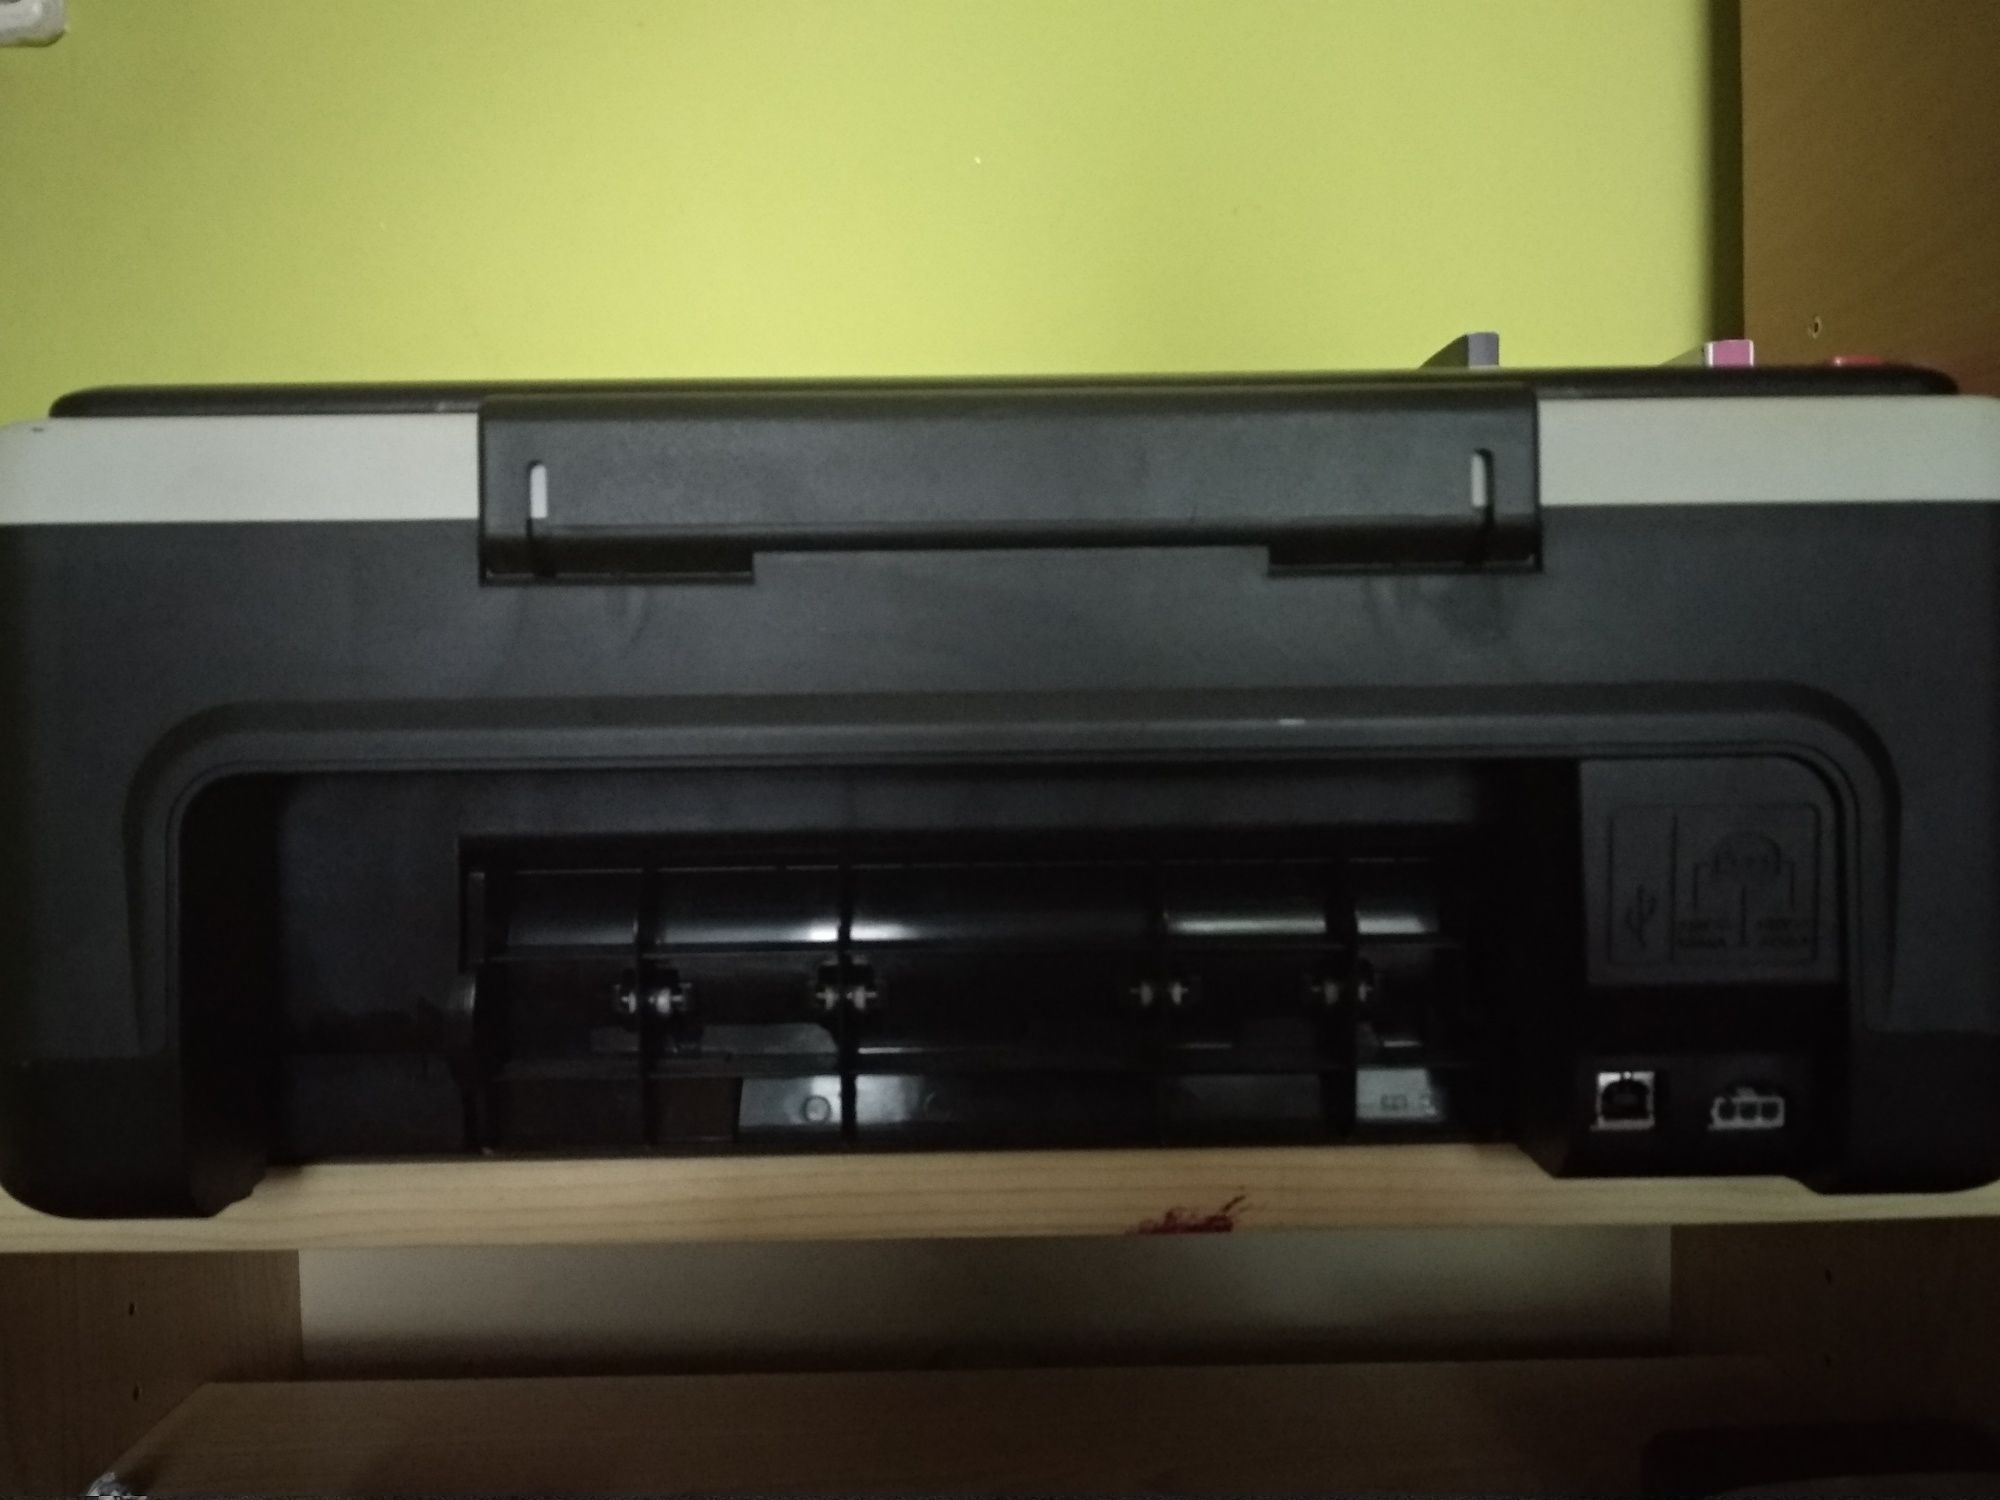 Imprimantă HP DeskJet F2180